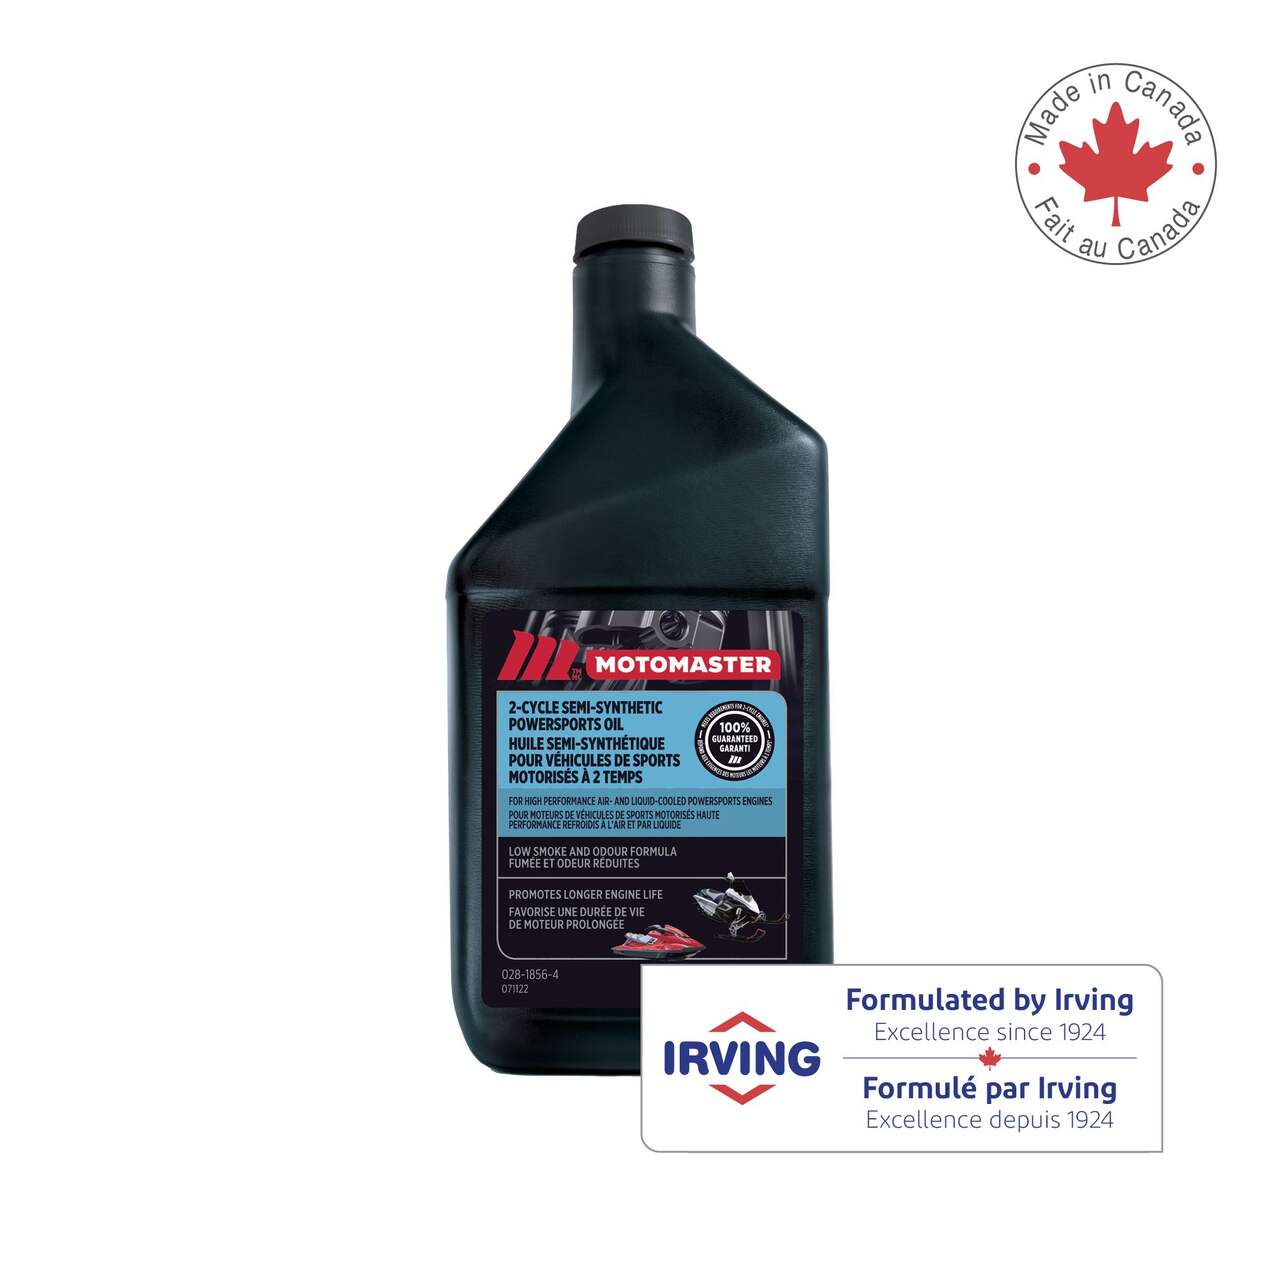 Lucas Oil 2-Stroke Semi-Synthetic Land & Sea Oil, 946-mL